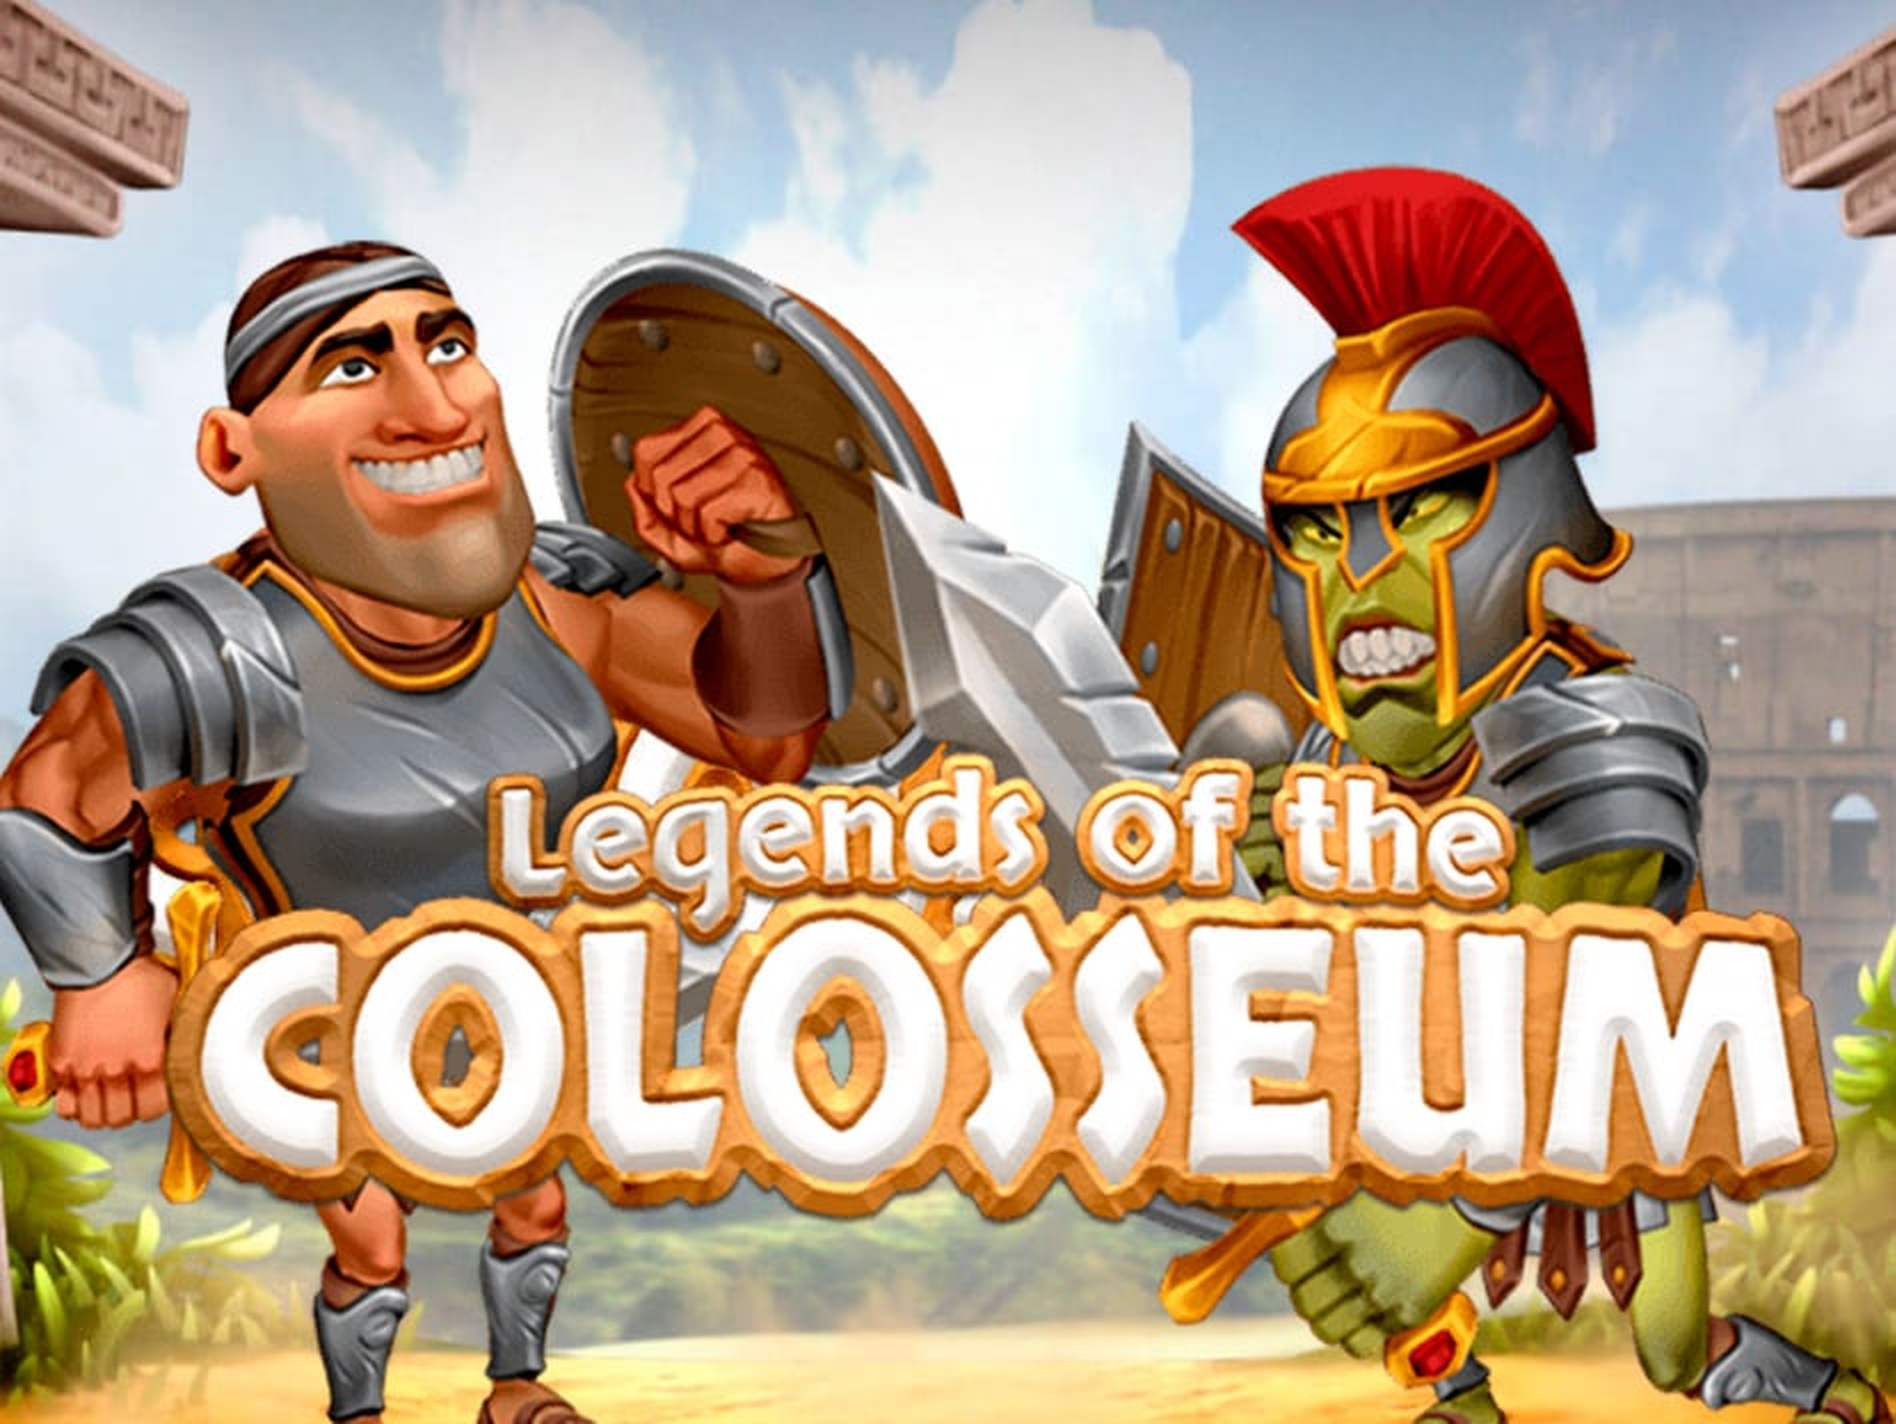 Legends of the Colosseum demo